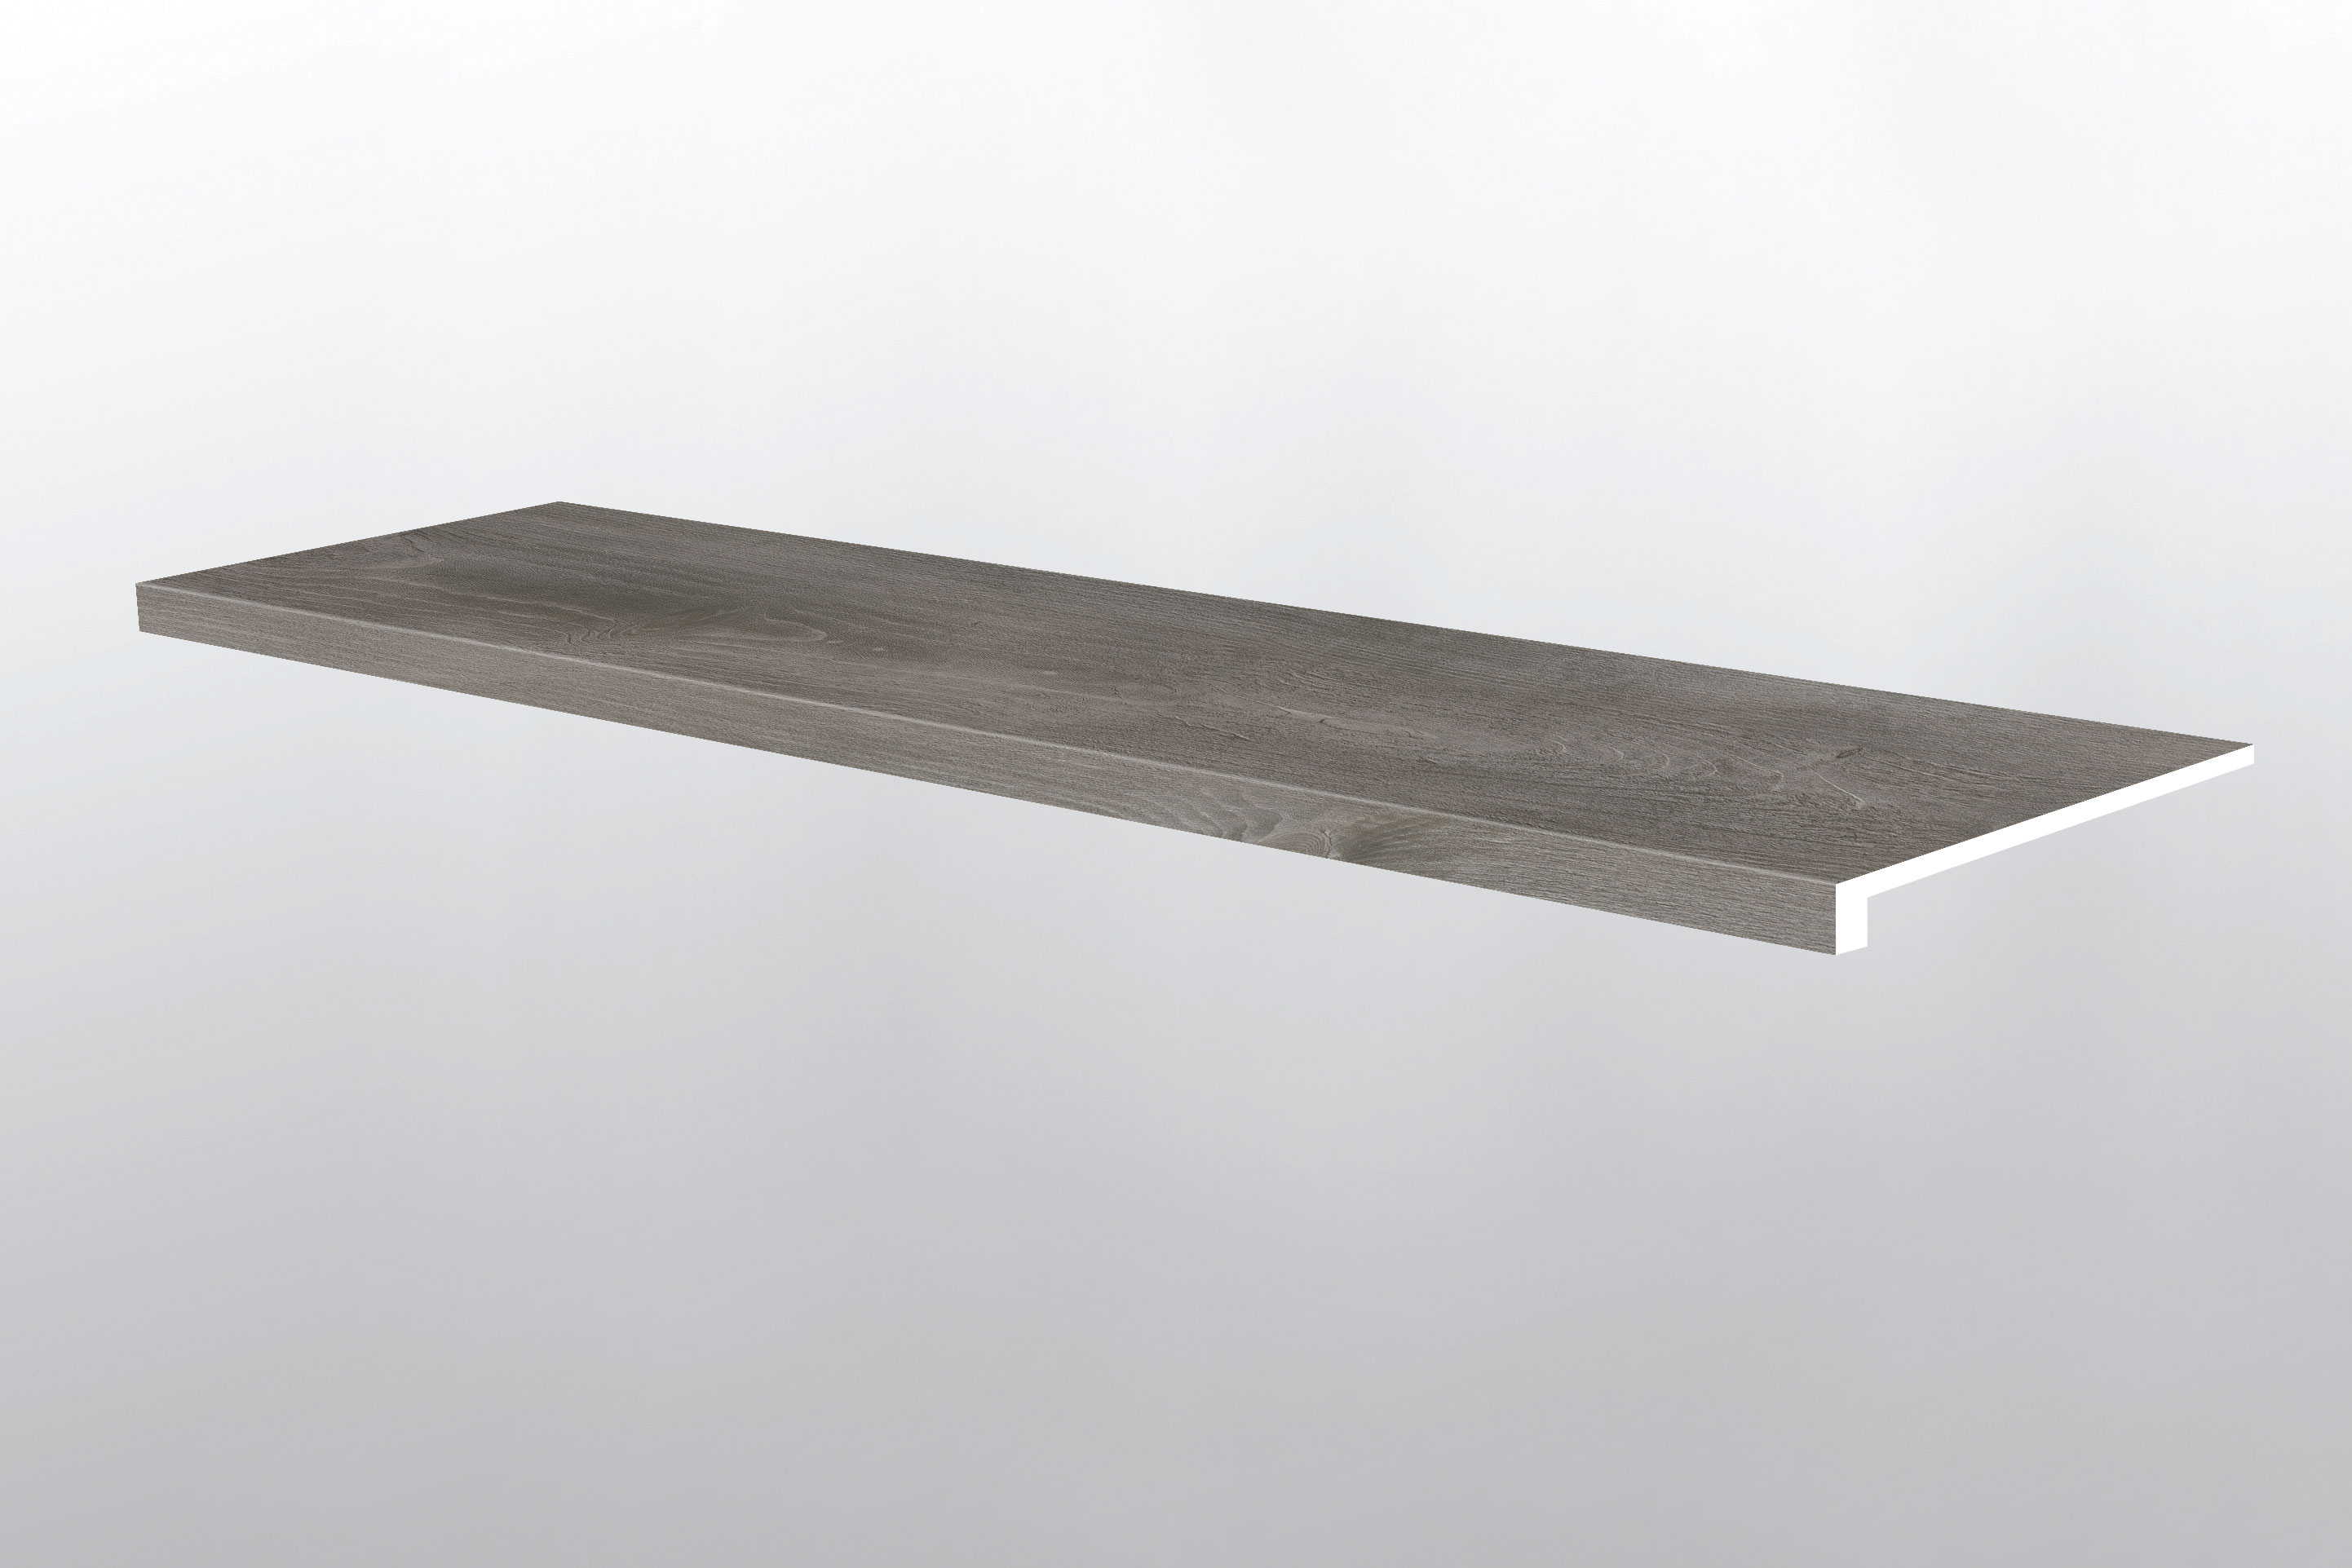 Woodrift Gray Luxury Vinyl Planks - Katavia Plank Flooring